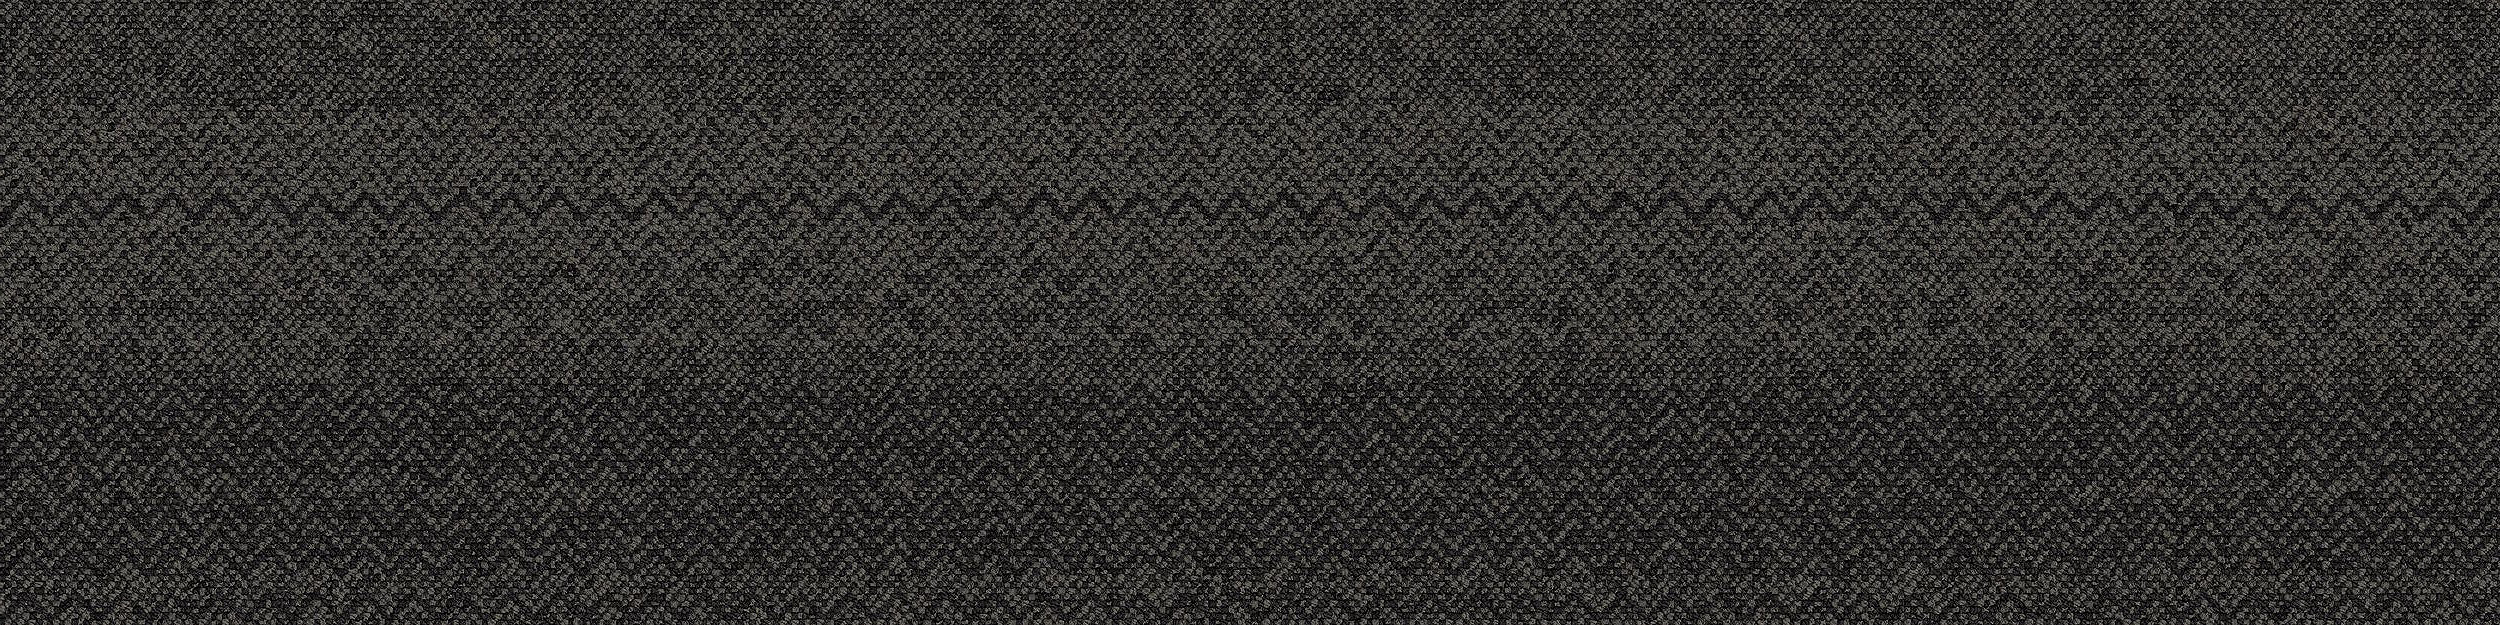 Stitchery Carpet Tile In Slate Stitchery imagen número 6